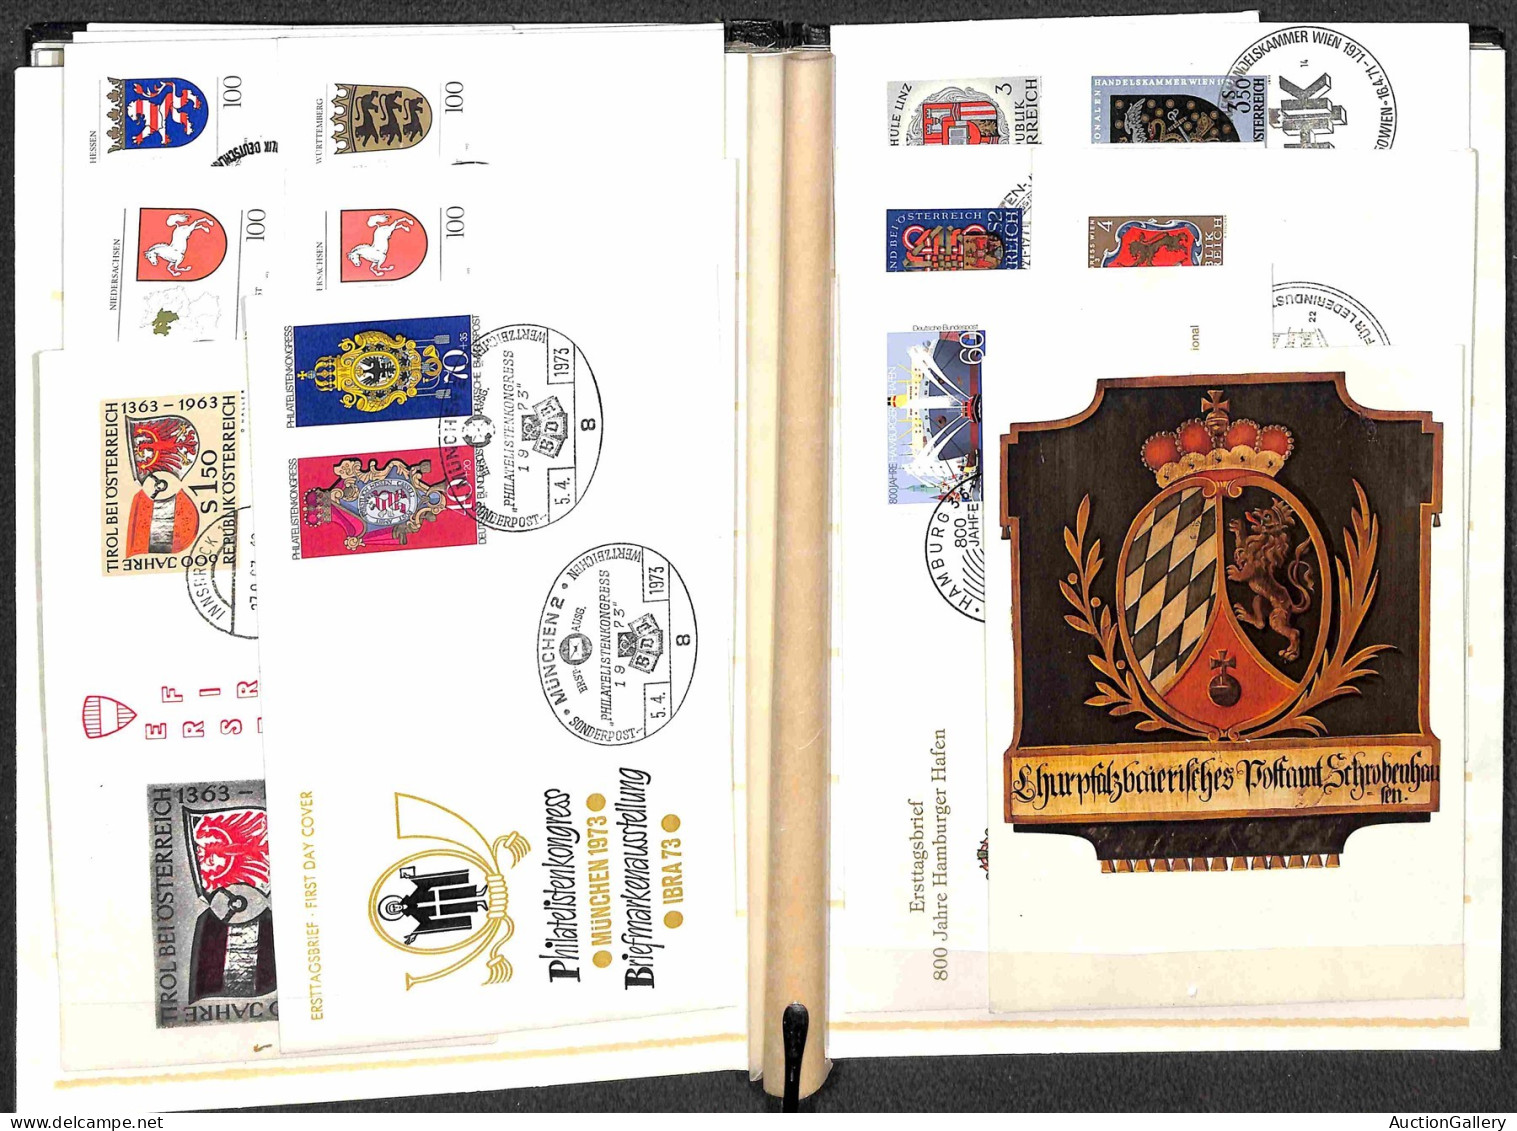 Lotti&Collezioni - Europa&Oltremare - TEMATICA - Stemmi - Classificatore con francobolli e buste della tematica - da esa